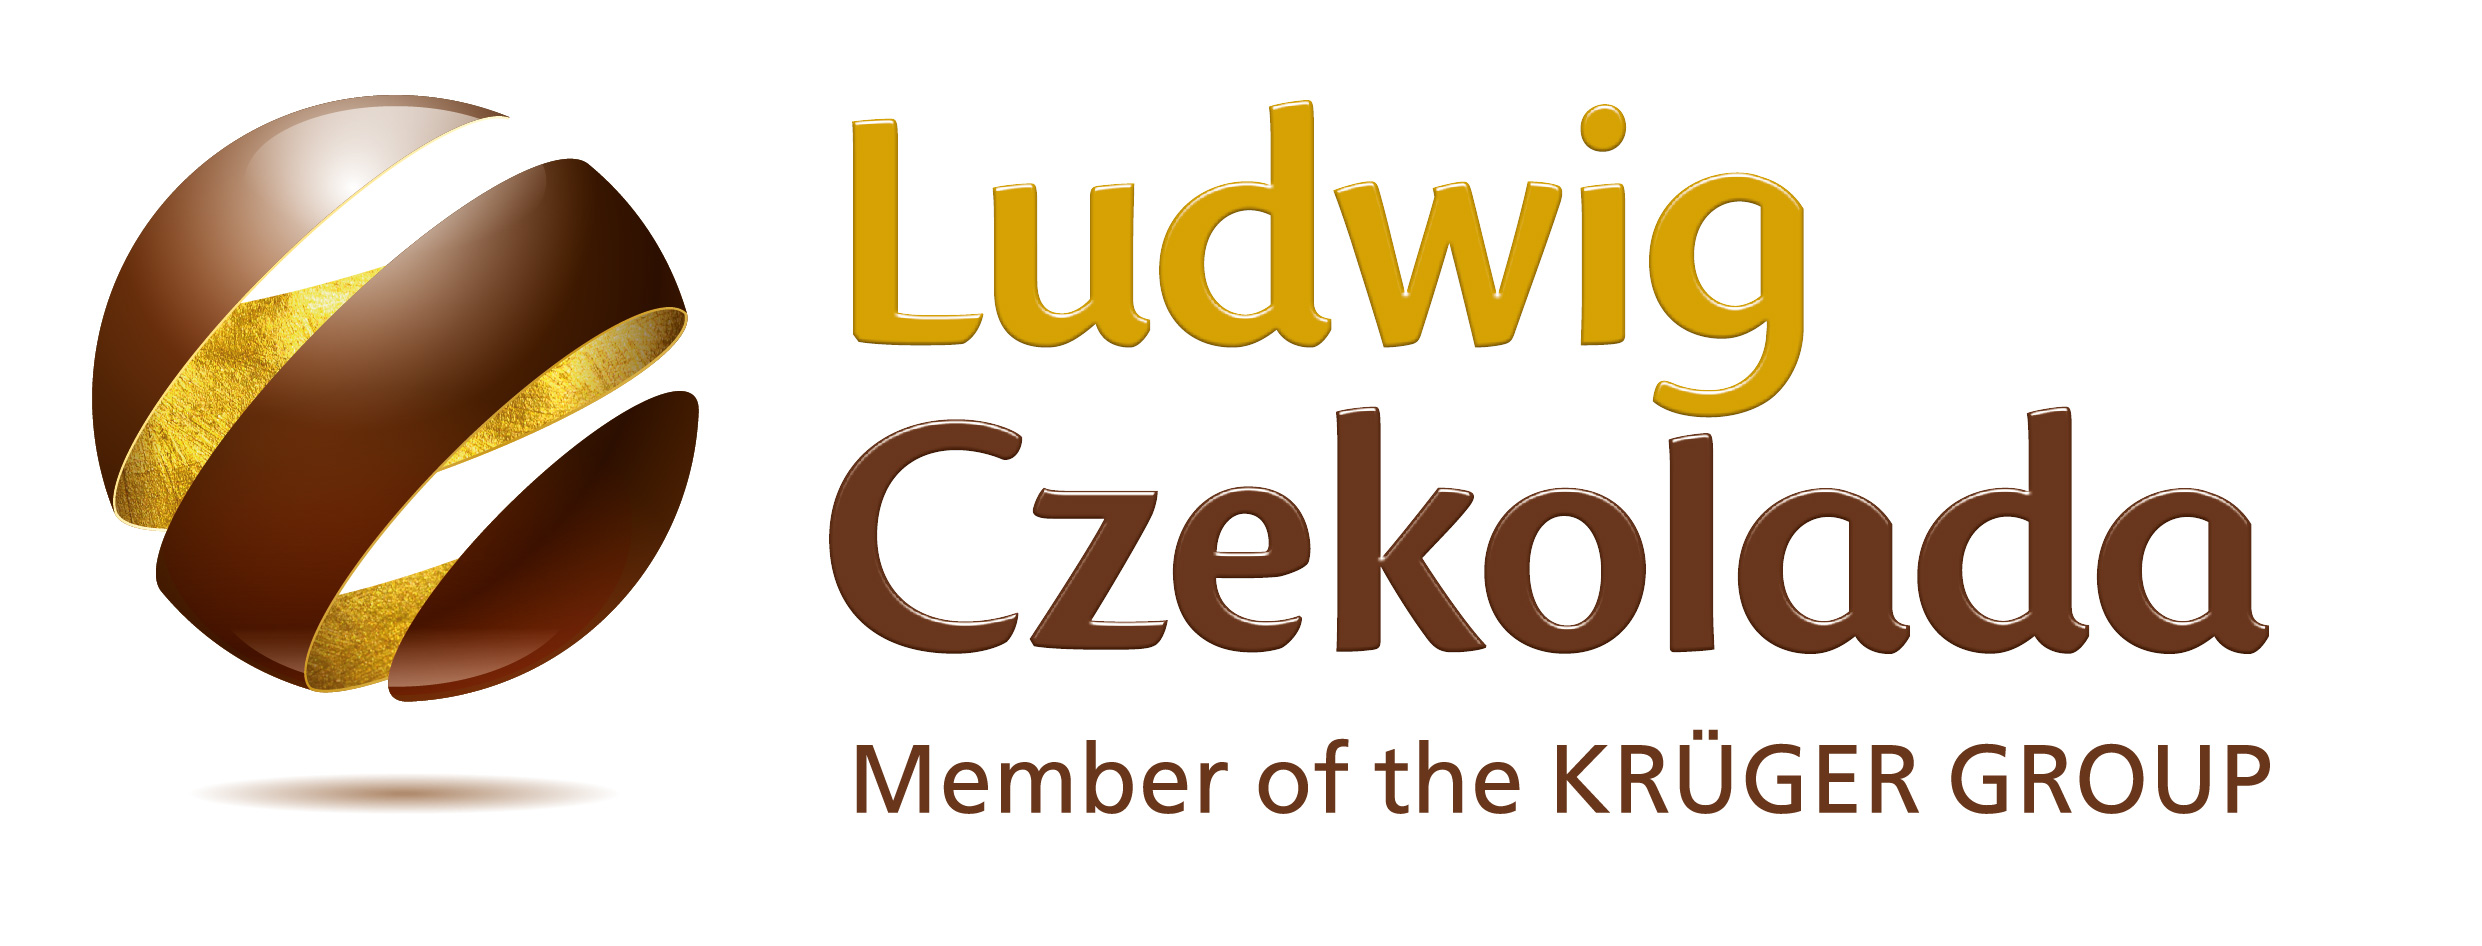 Ludwig Czekolada